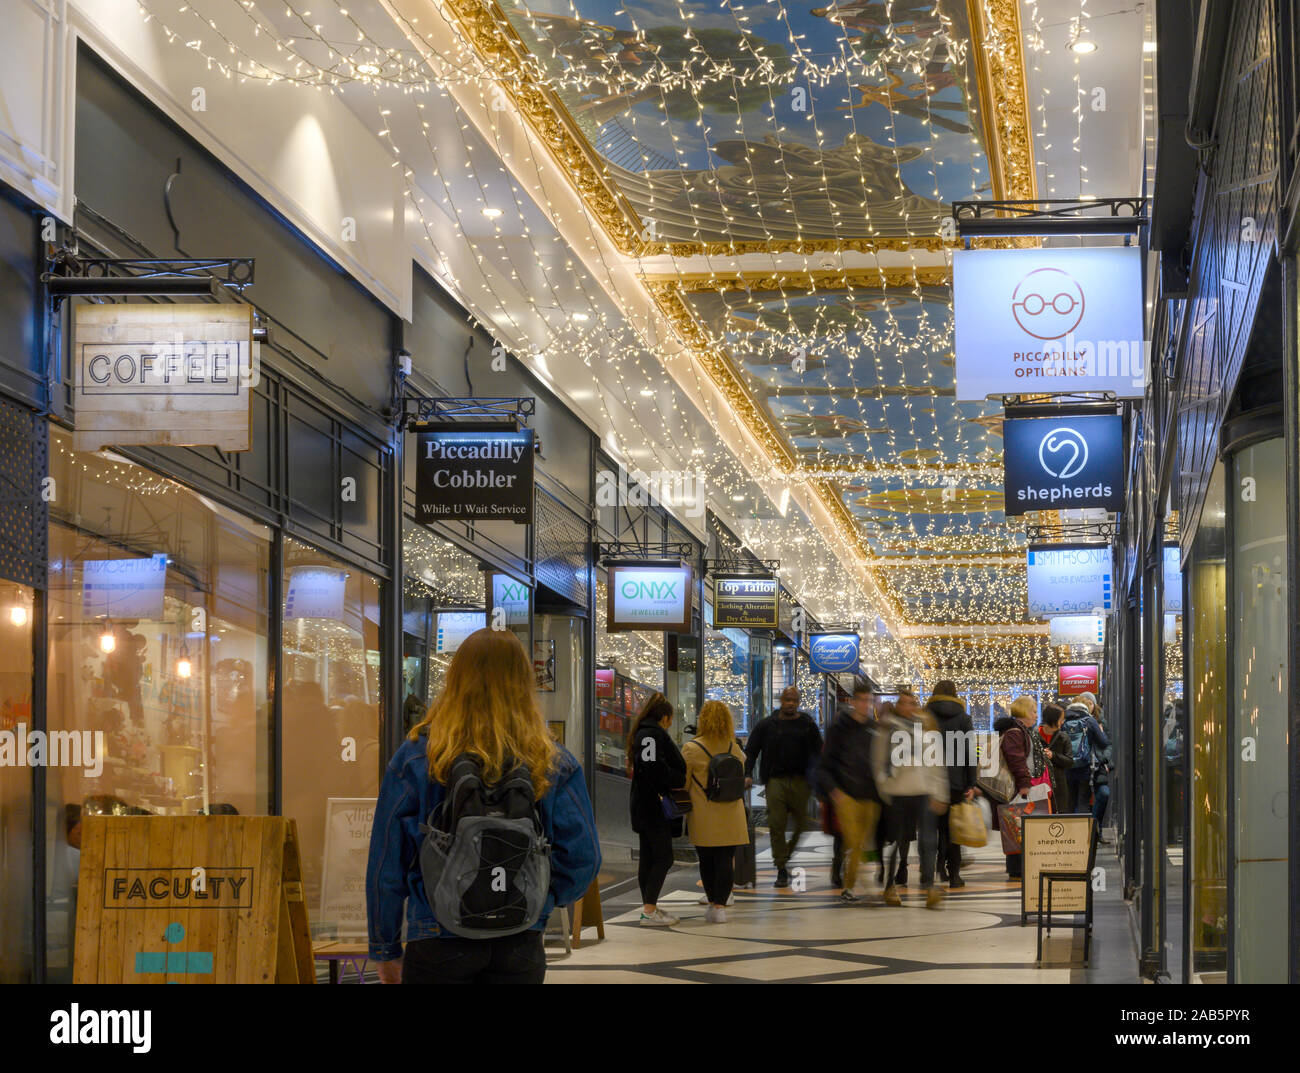 Les lumières de Noël et de détail shoppers au Great Western Arcade, le centre-ville de Birmingham, Birmingham, West Midlands, England, UK. Banque D'Images